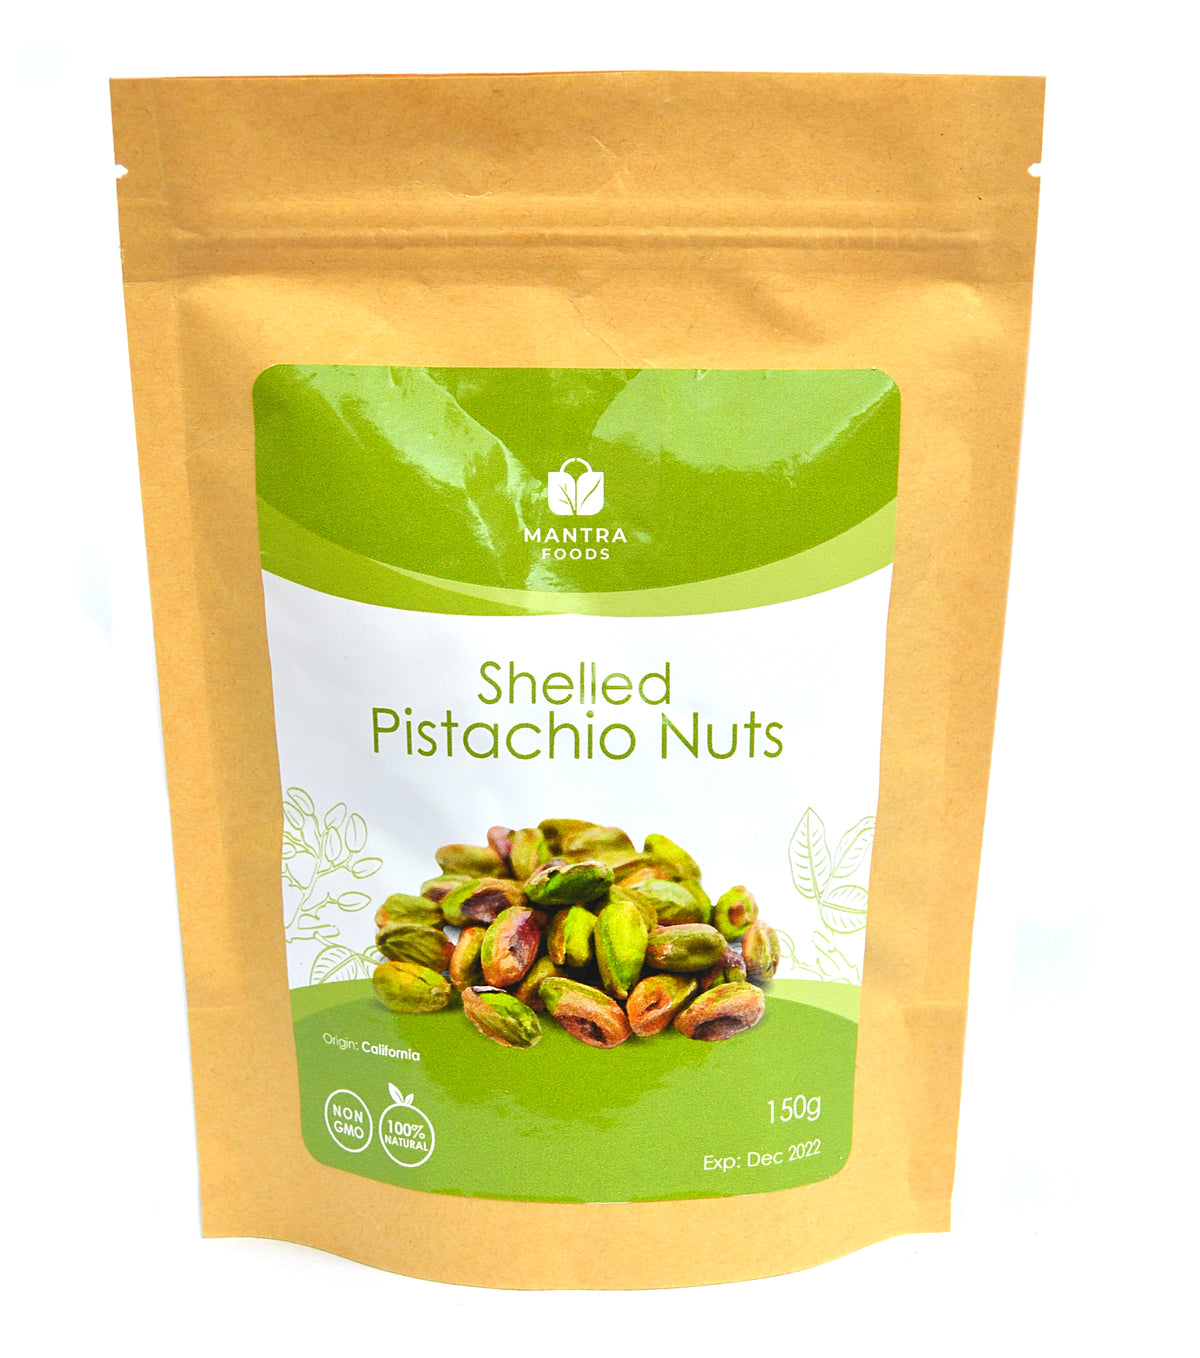 Shelled pistachios (200G)